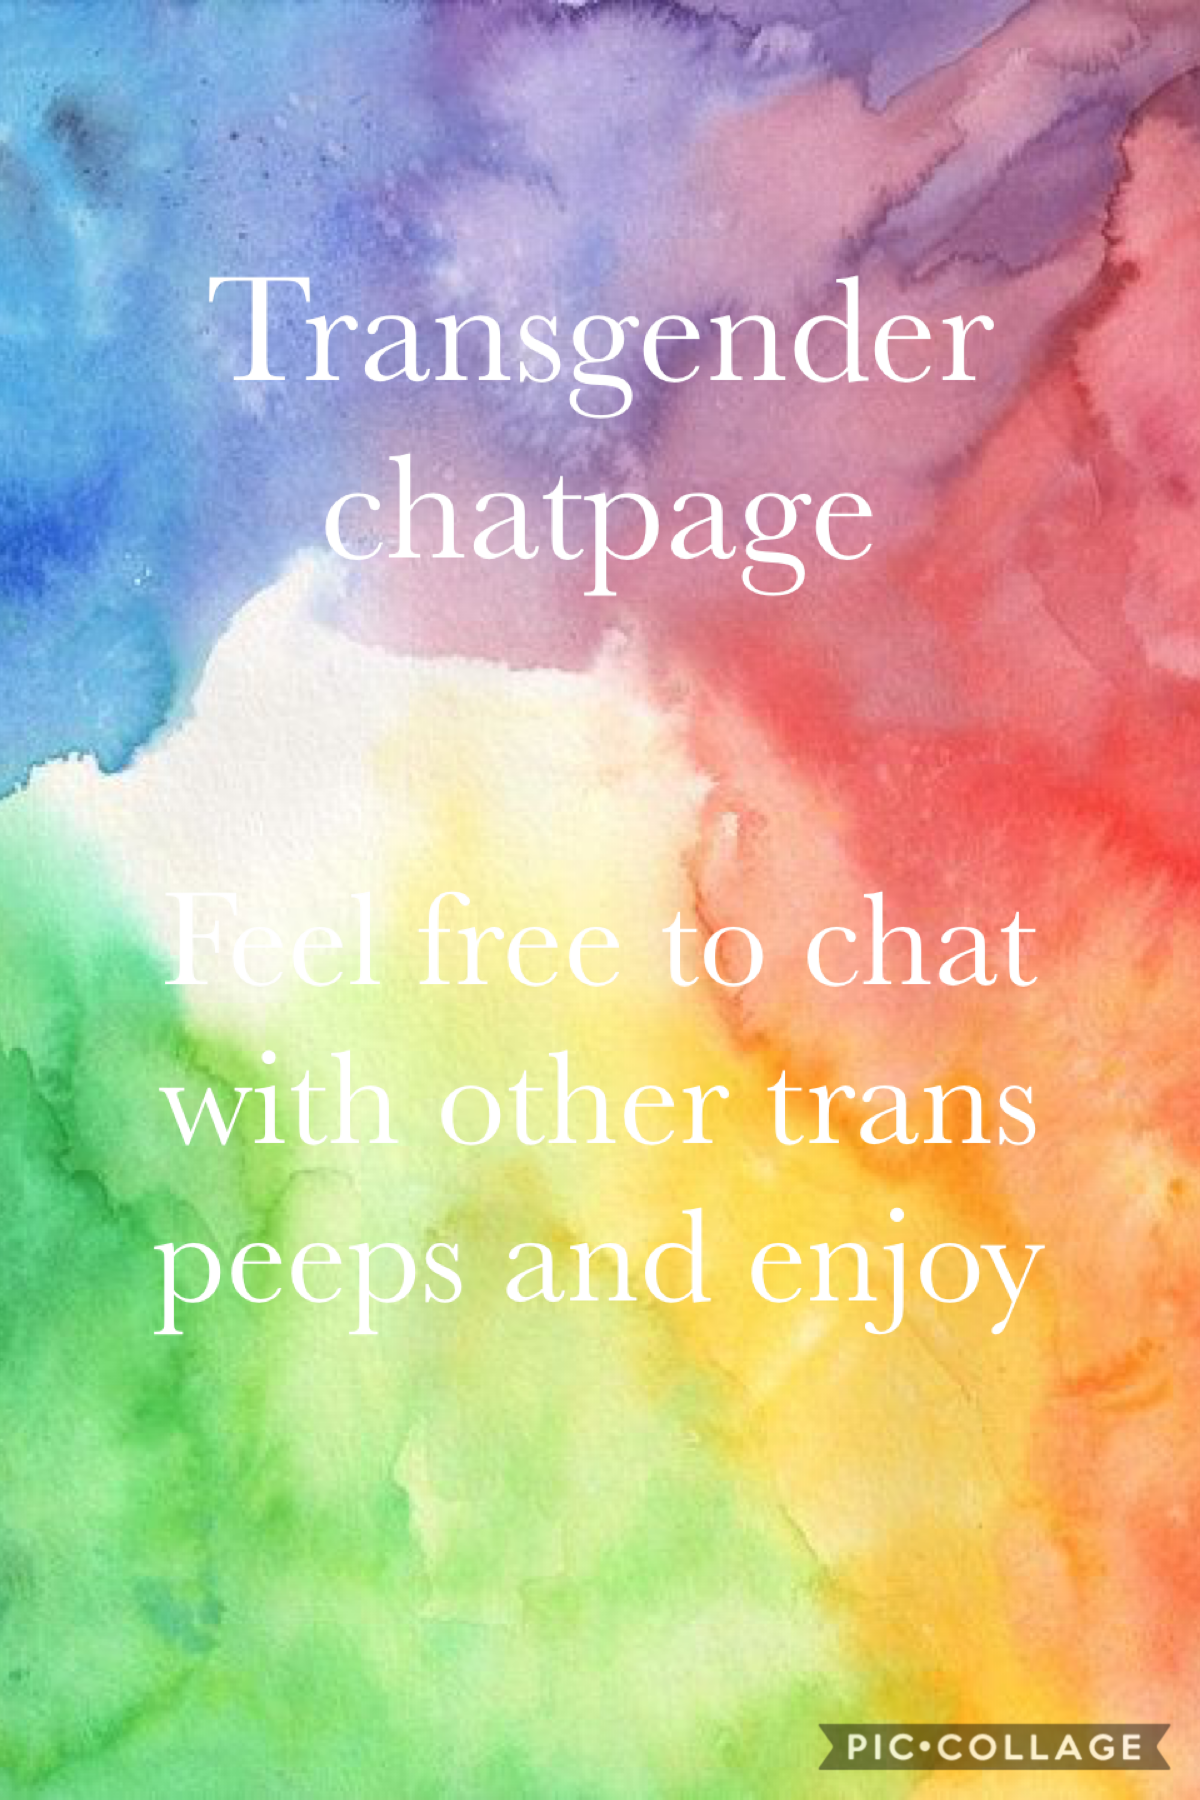 Transgender chatpage 